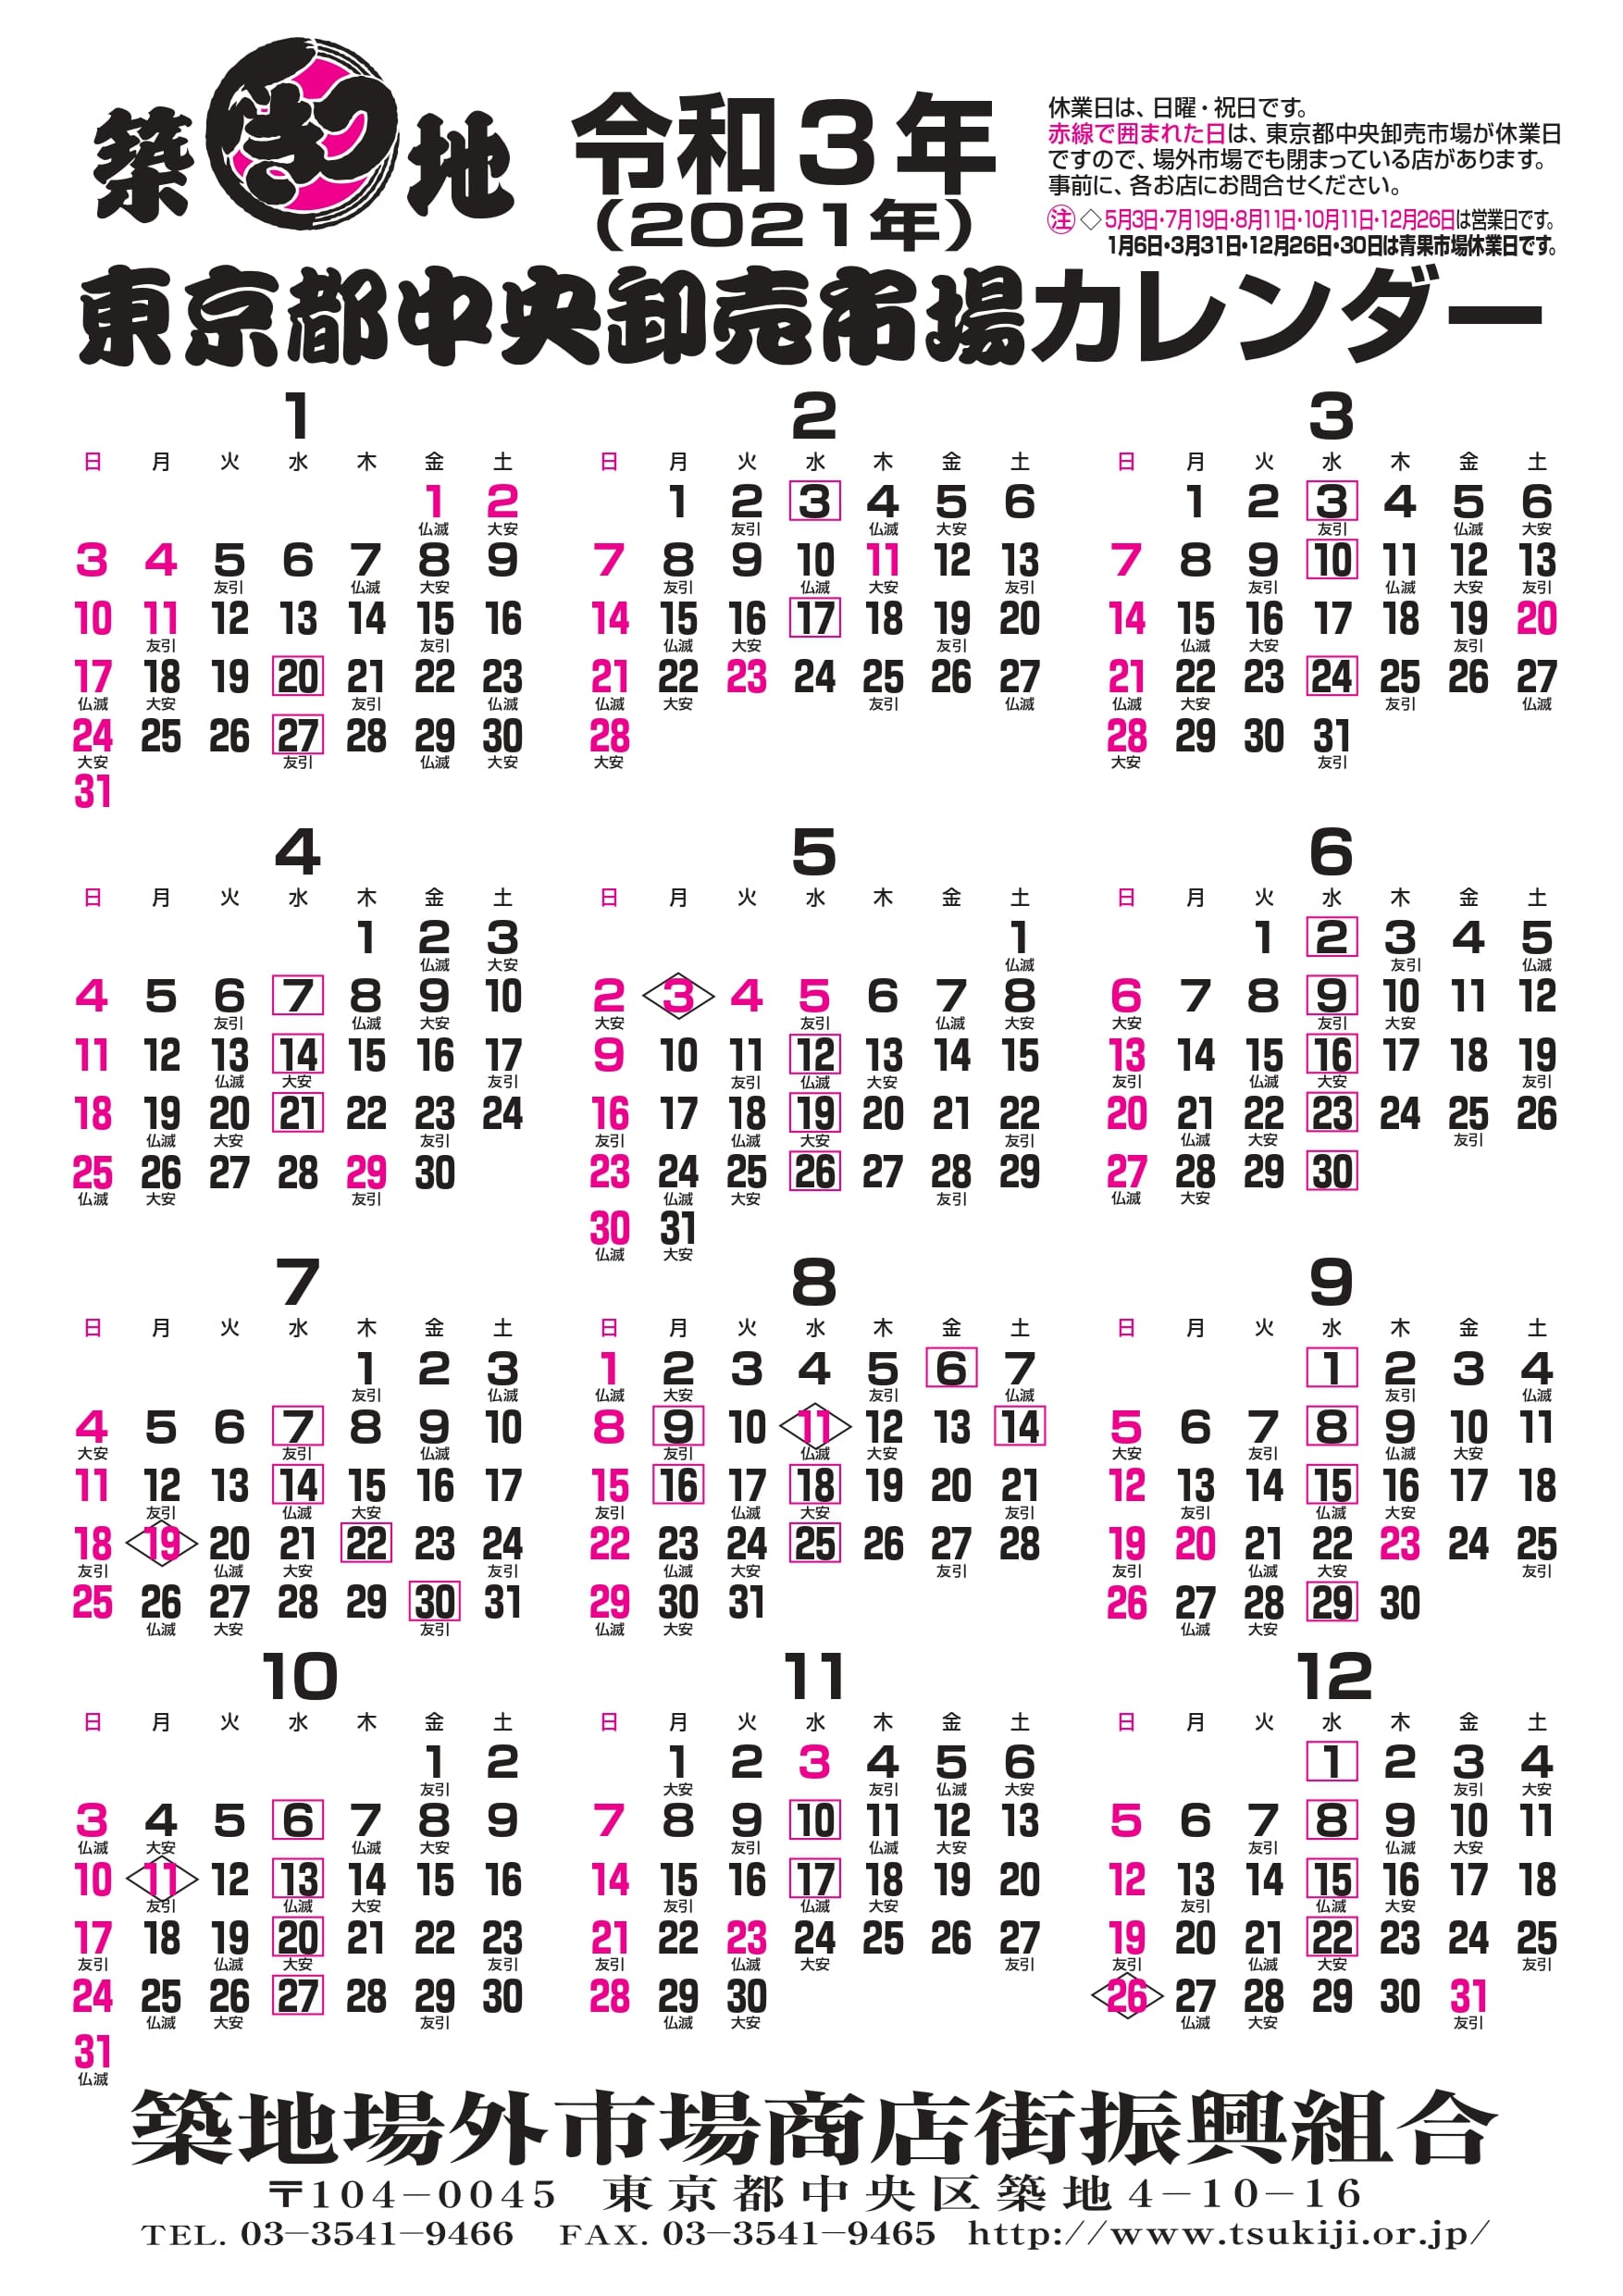 令和3年 21年 東京都中央卸売市場 市場カレンダー お知らせ 築地場外市場 公式ホームページ